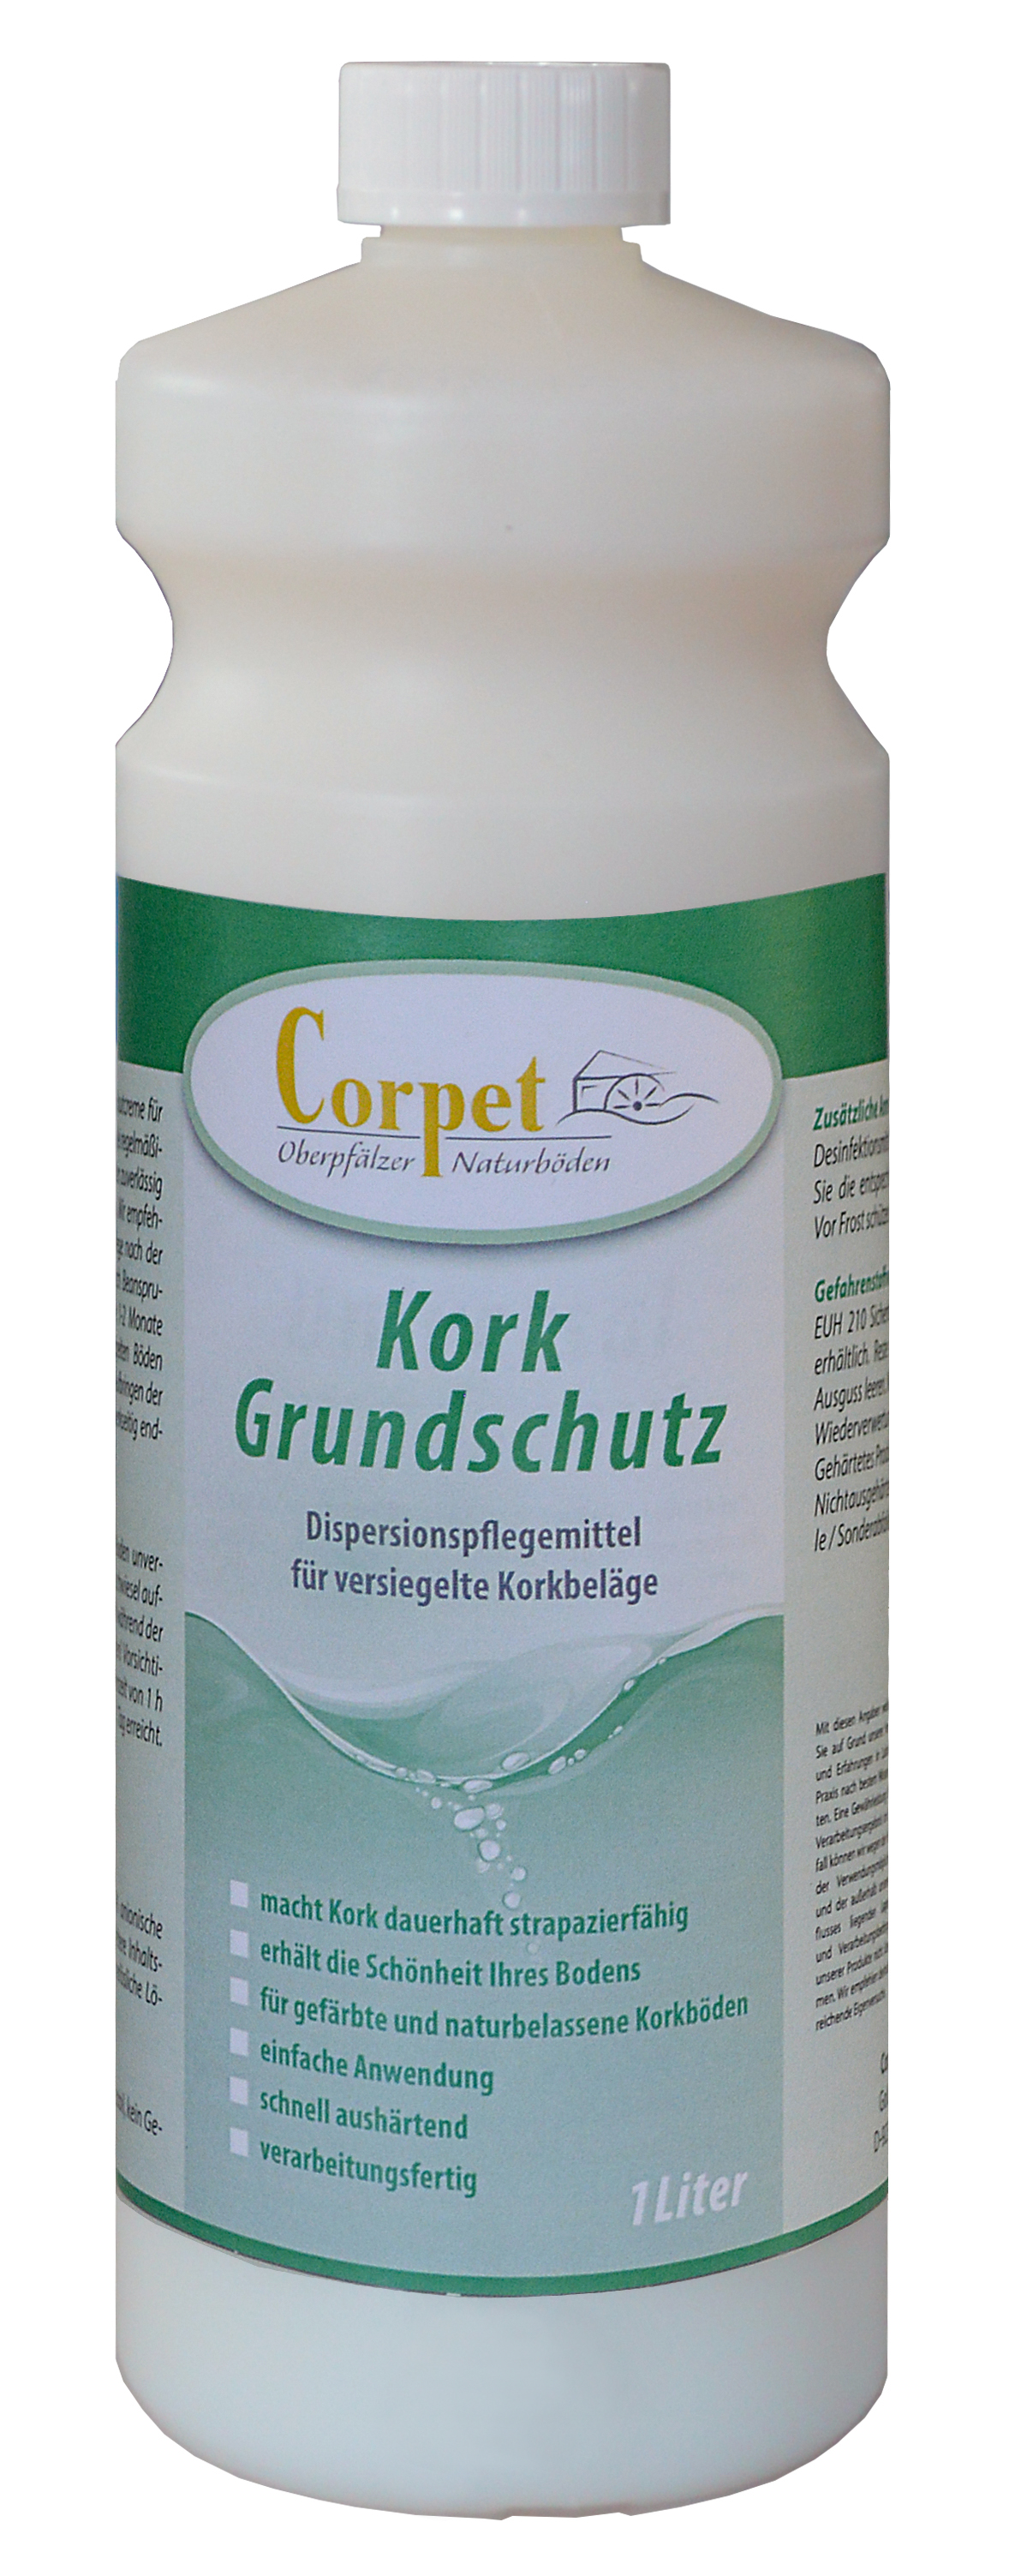 Corpet Kork Grundschutz 1 Ltr./Geb.